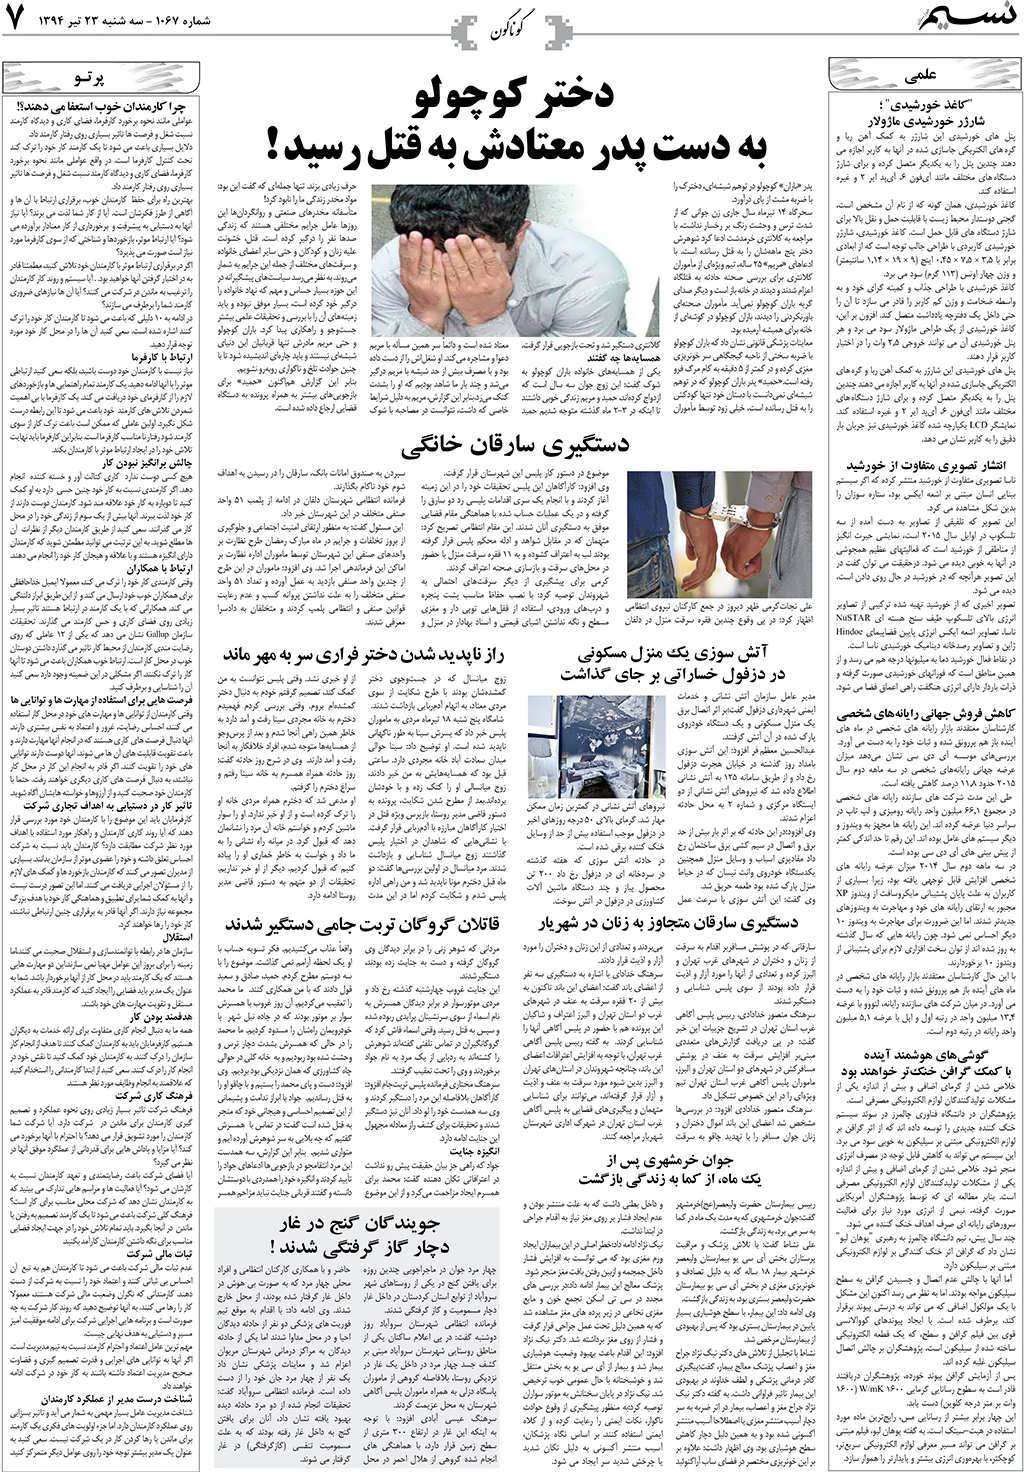 صفحه گوناگون روزنامه نسیم شماره 1067